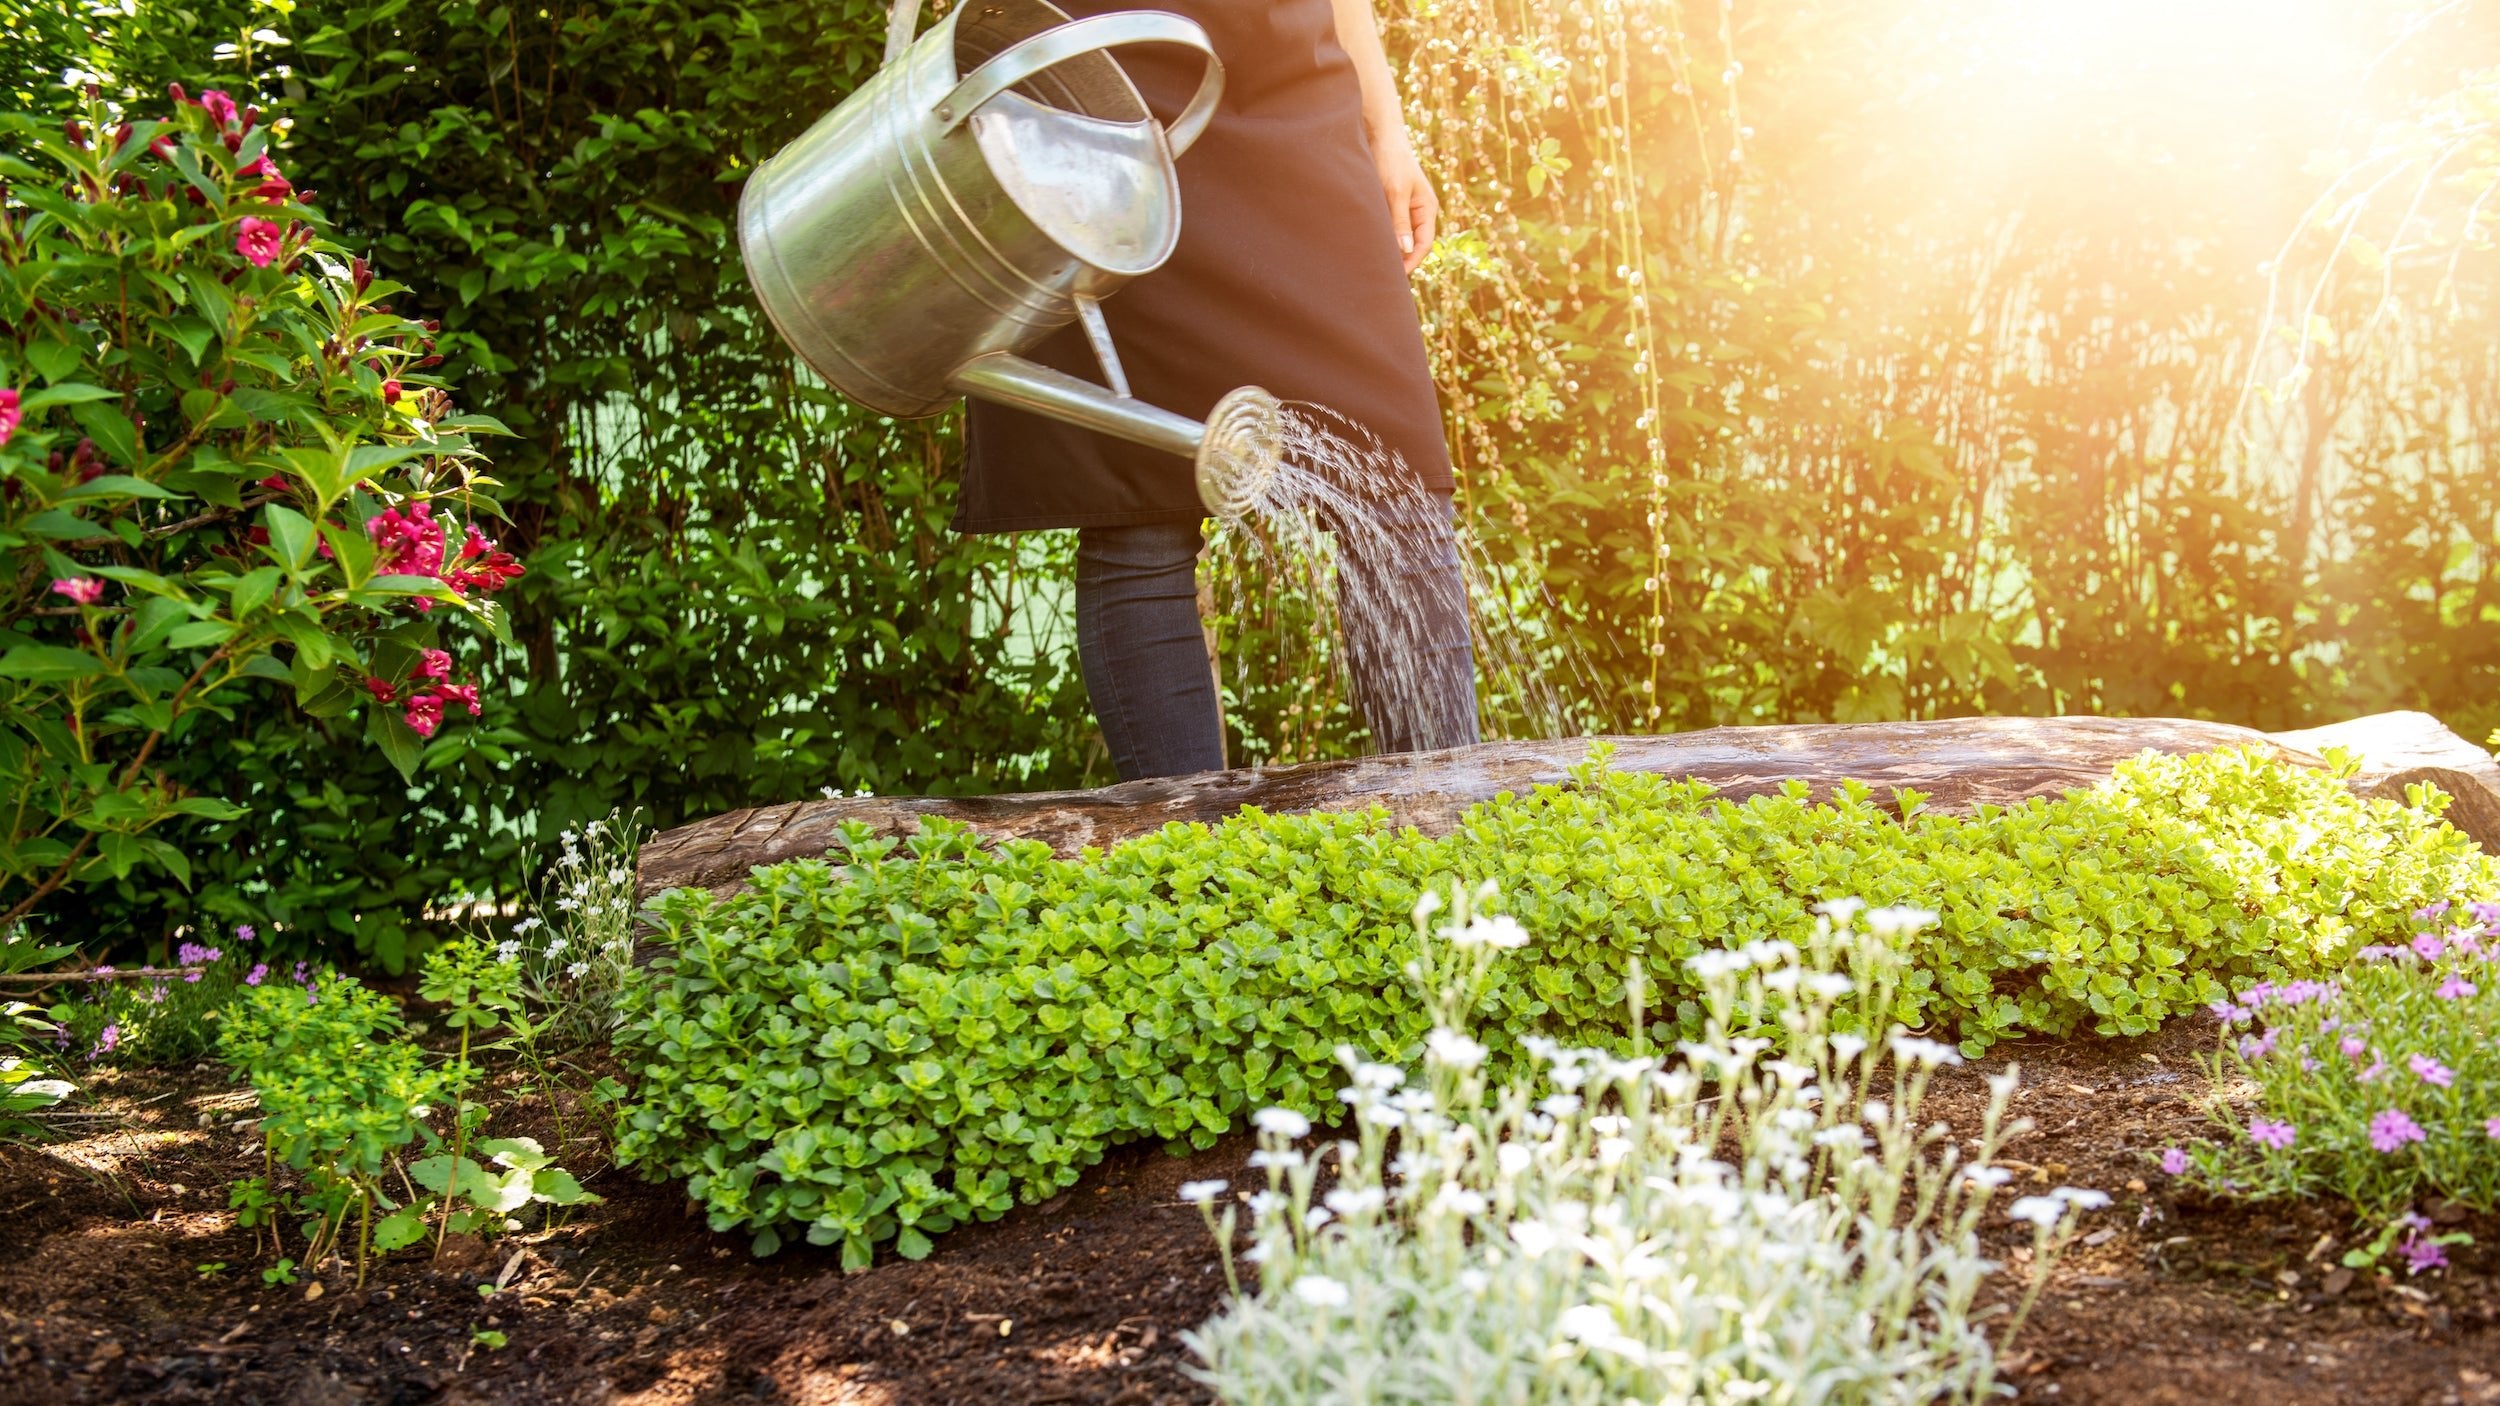 Mit einer Gießkanne bewässert ein Mann seine schönen Pflanzen im Garten. Damit schützt er seine Blumen vor den heißen Sommern.